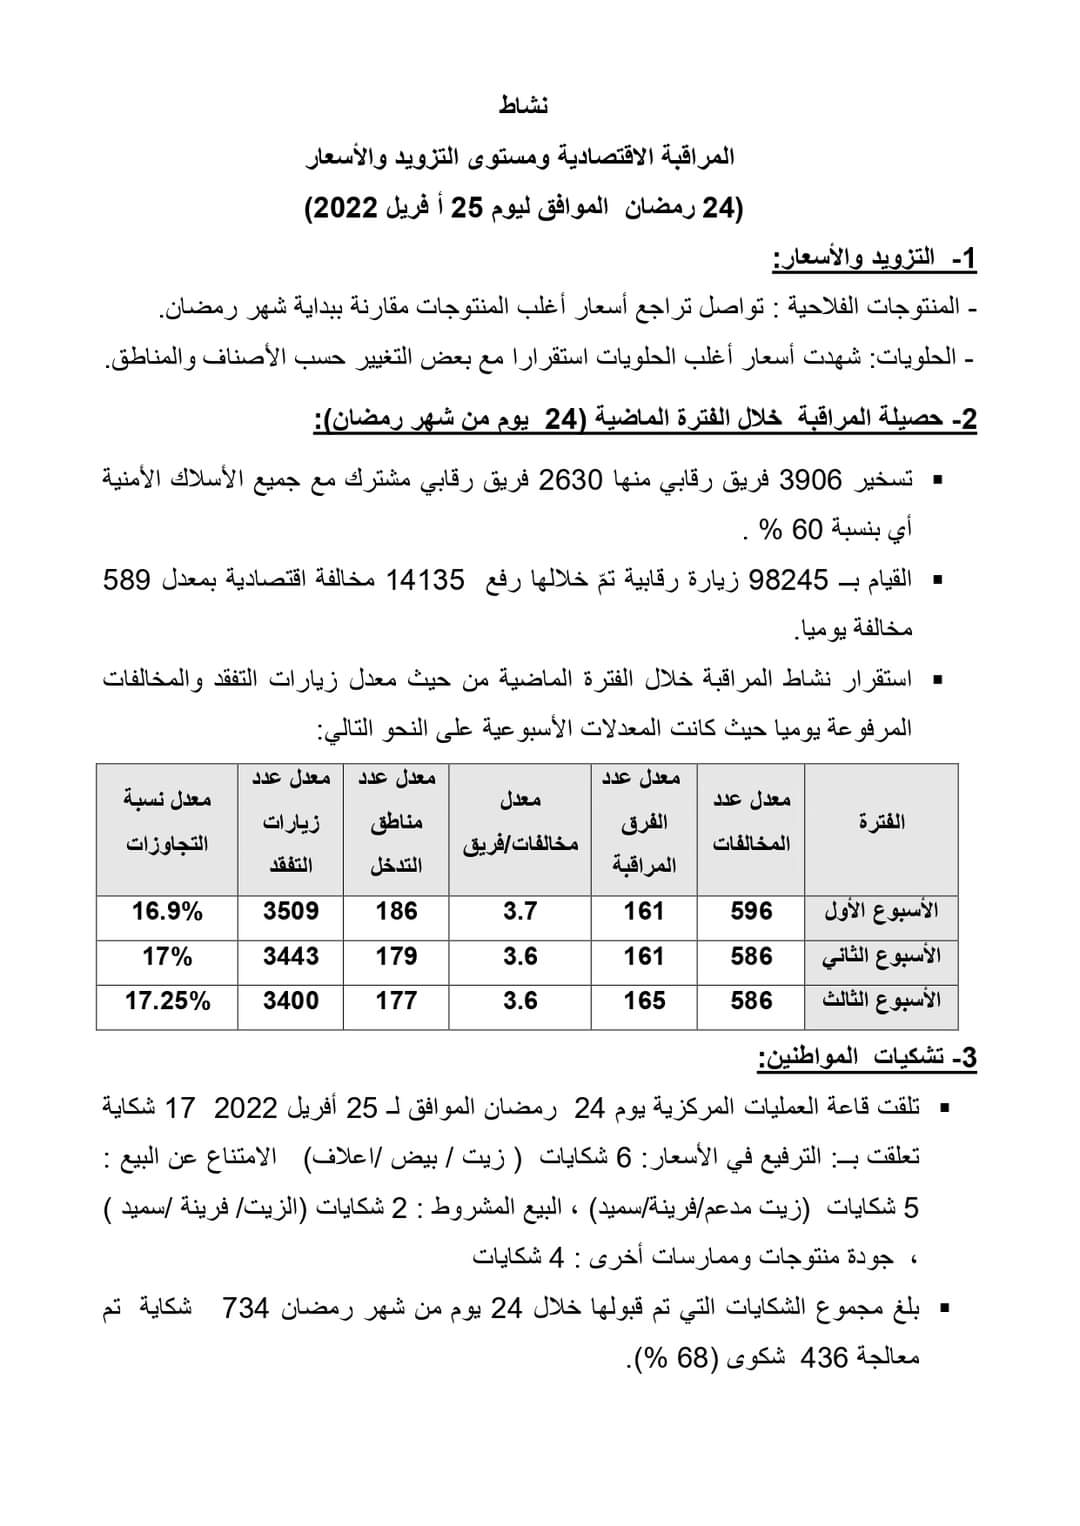 FB IMG 1650976014913 - مستوى التزويد والأسعار ونشاط المراقبة الاقتصادية لليوم 24 من رمضان..